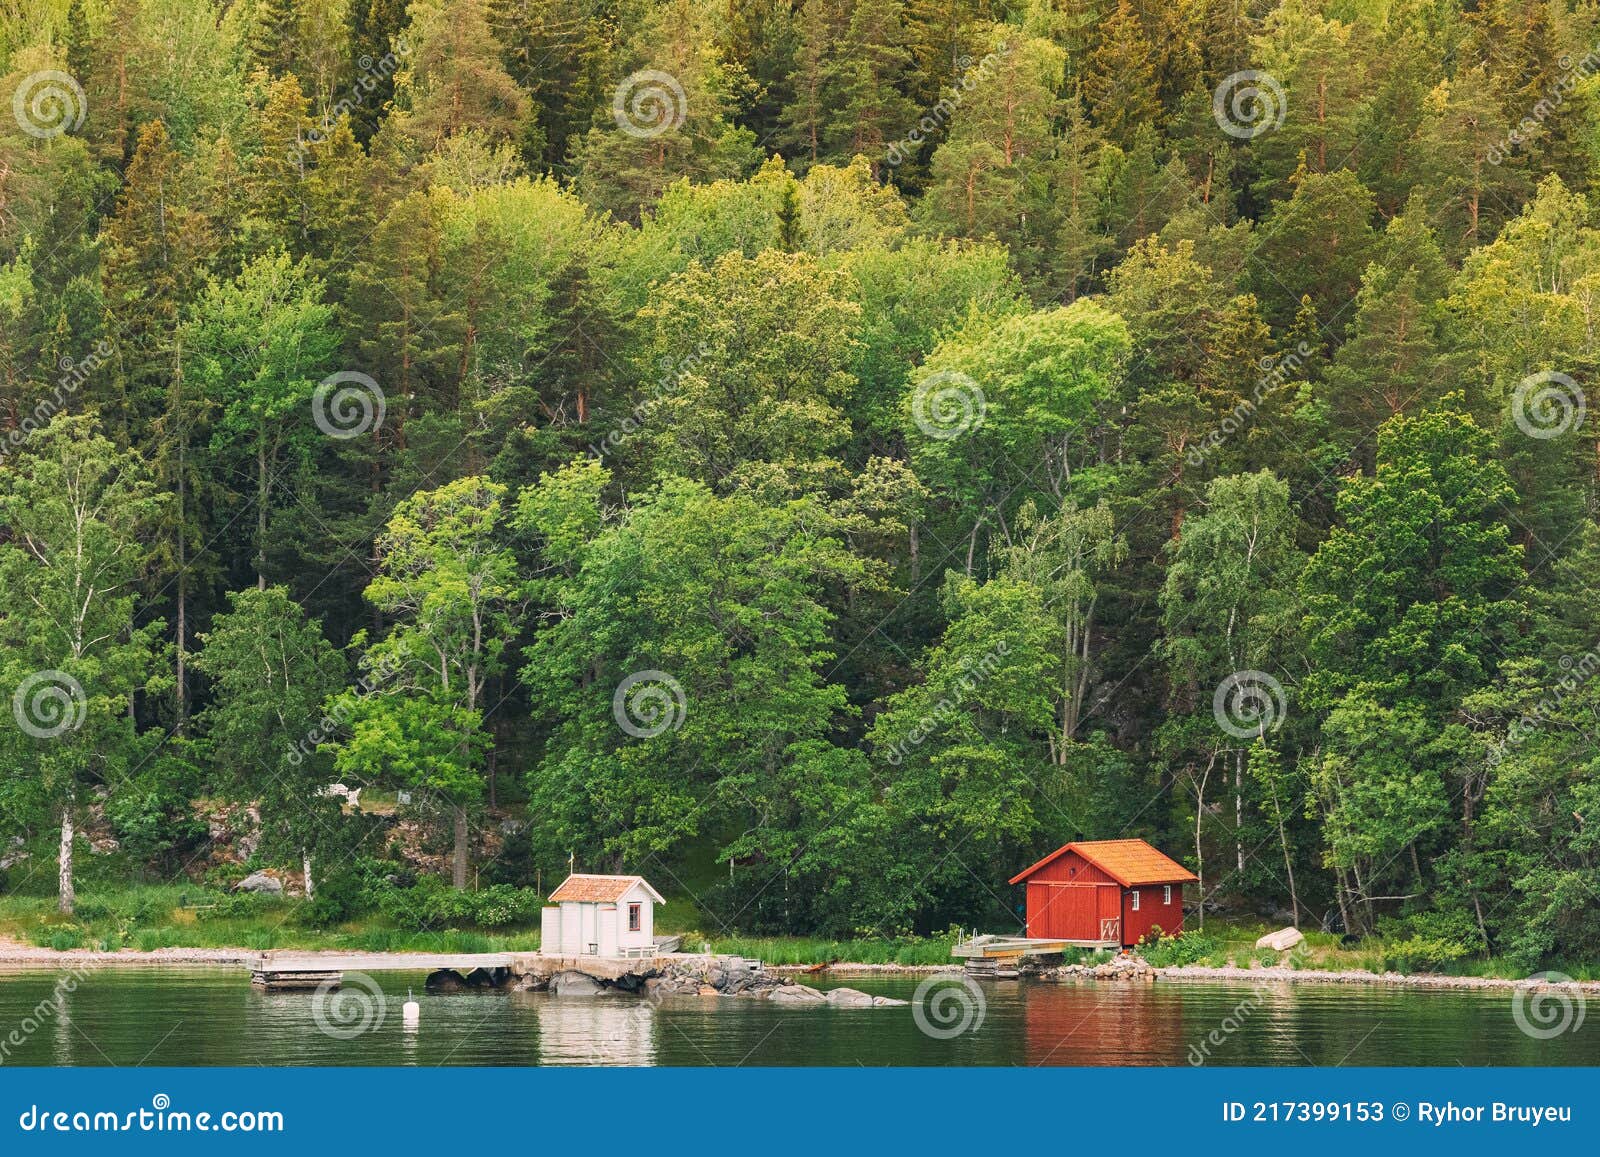 Details about   Old Cabin Forest Sweden Nature Landscape  HD POSTER